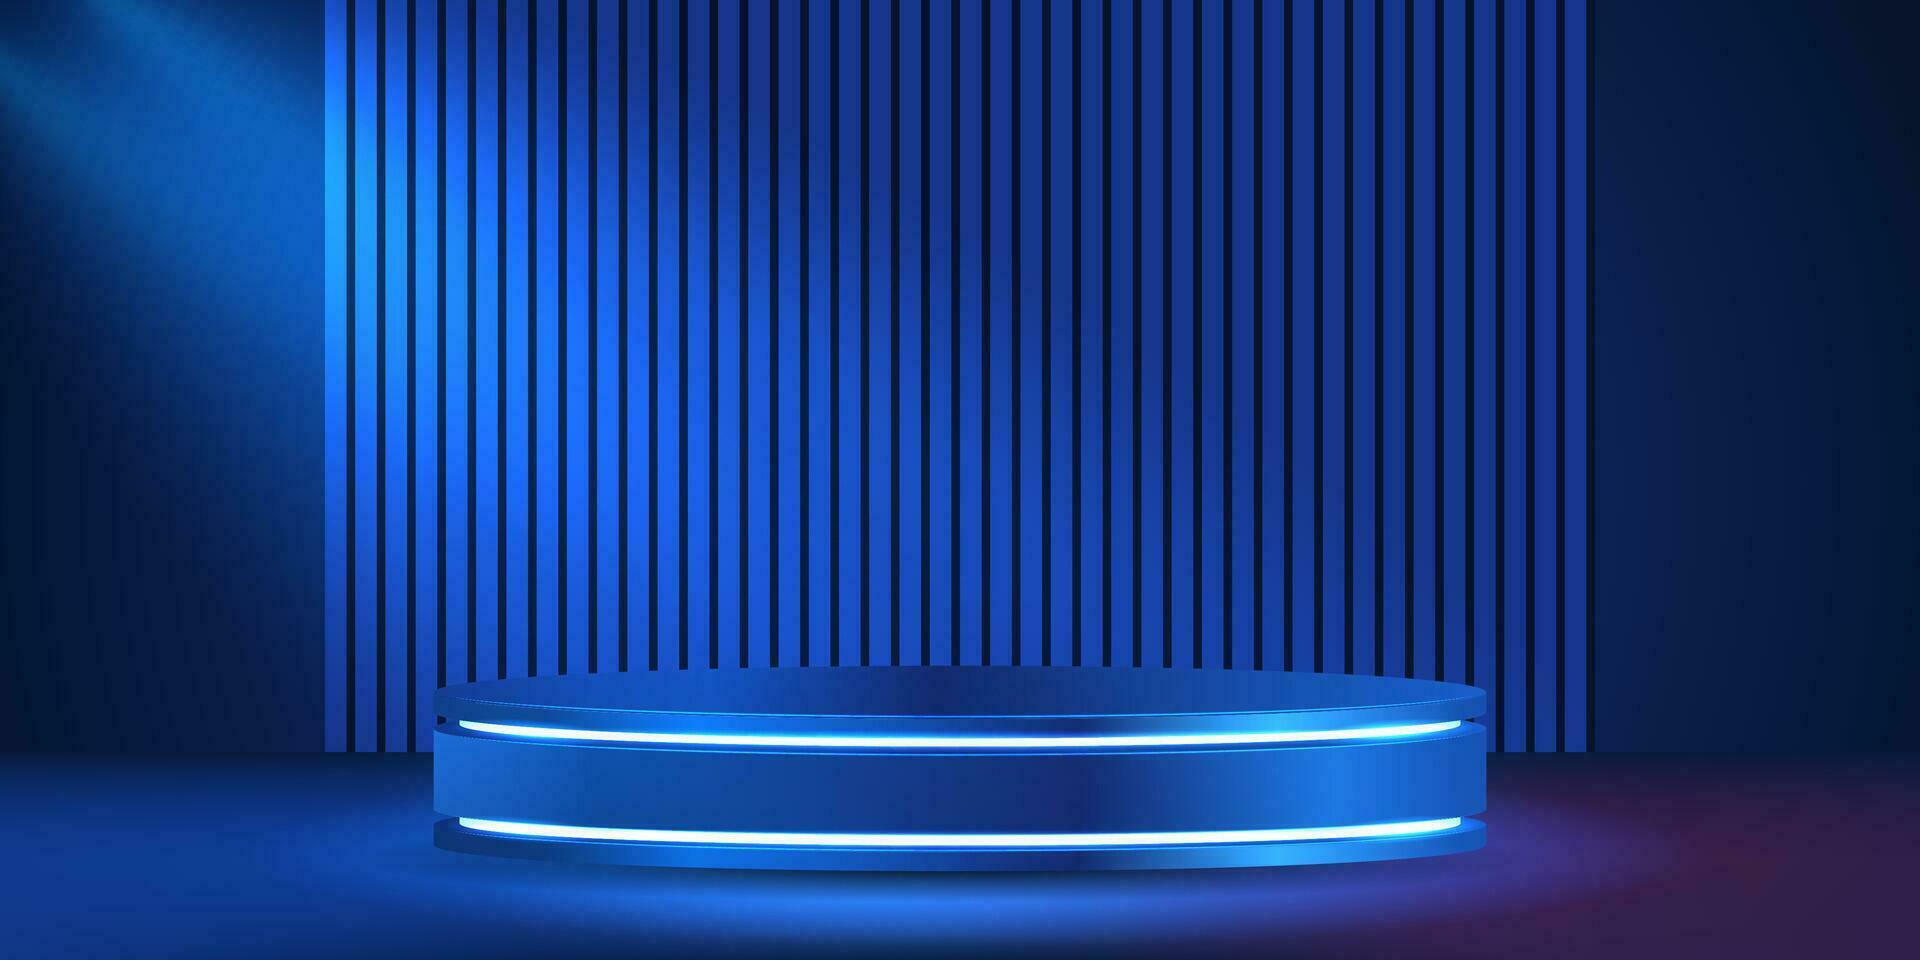 abstract realistisch 3d blauw cilinder voetstuk podium met blauw perspectief strepen. luxe blauw minimaal muur tafereel voor Product Scherm presentatie. vector meetkundig